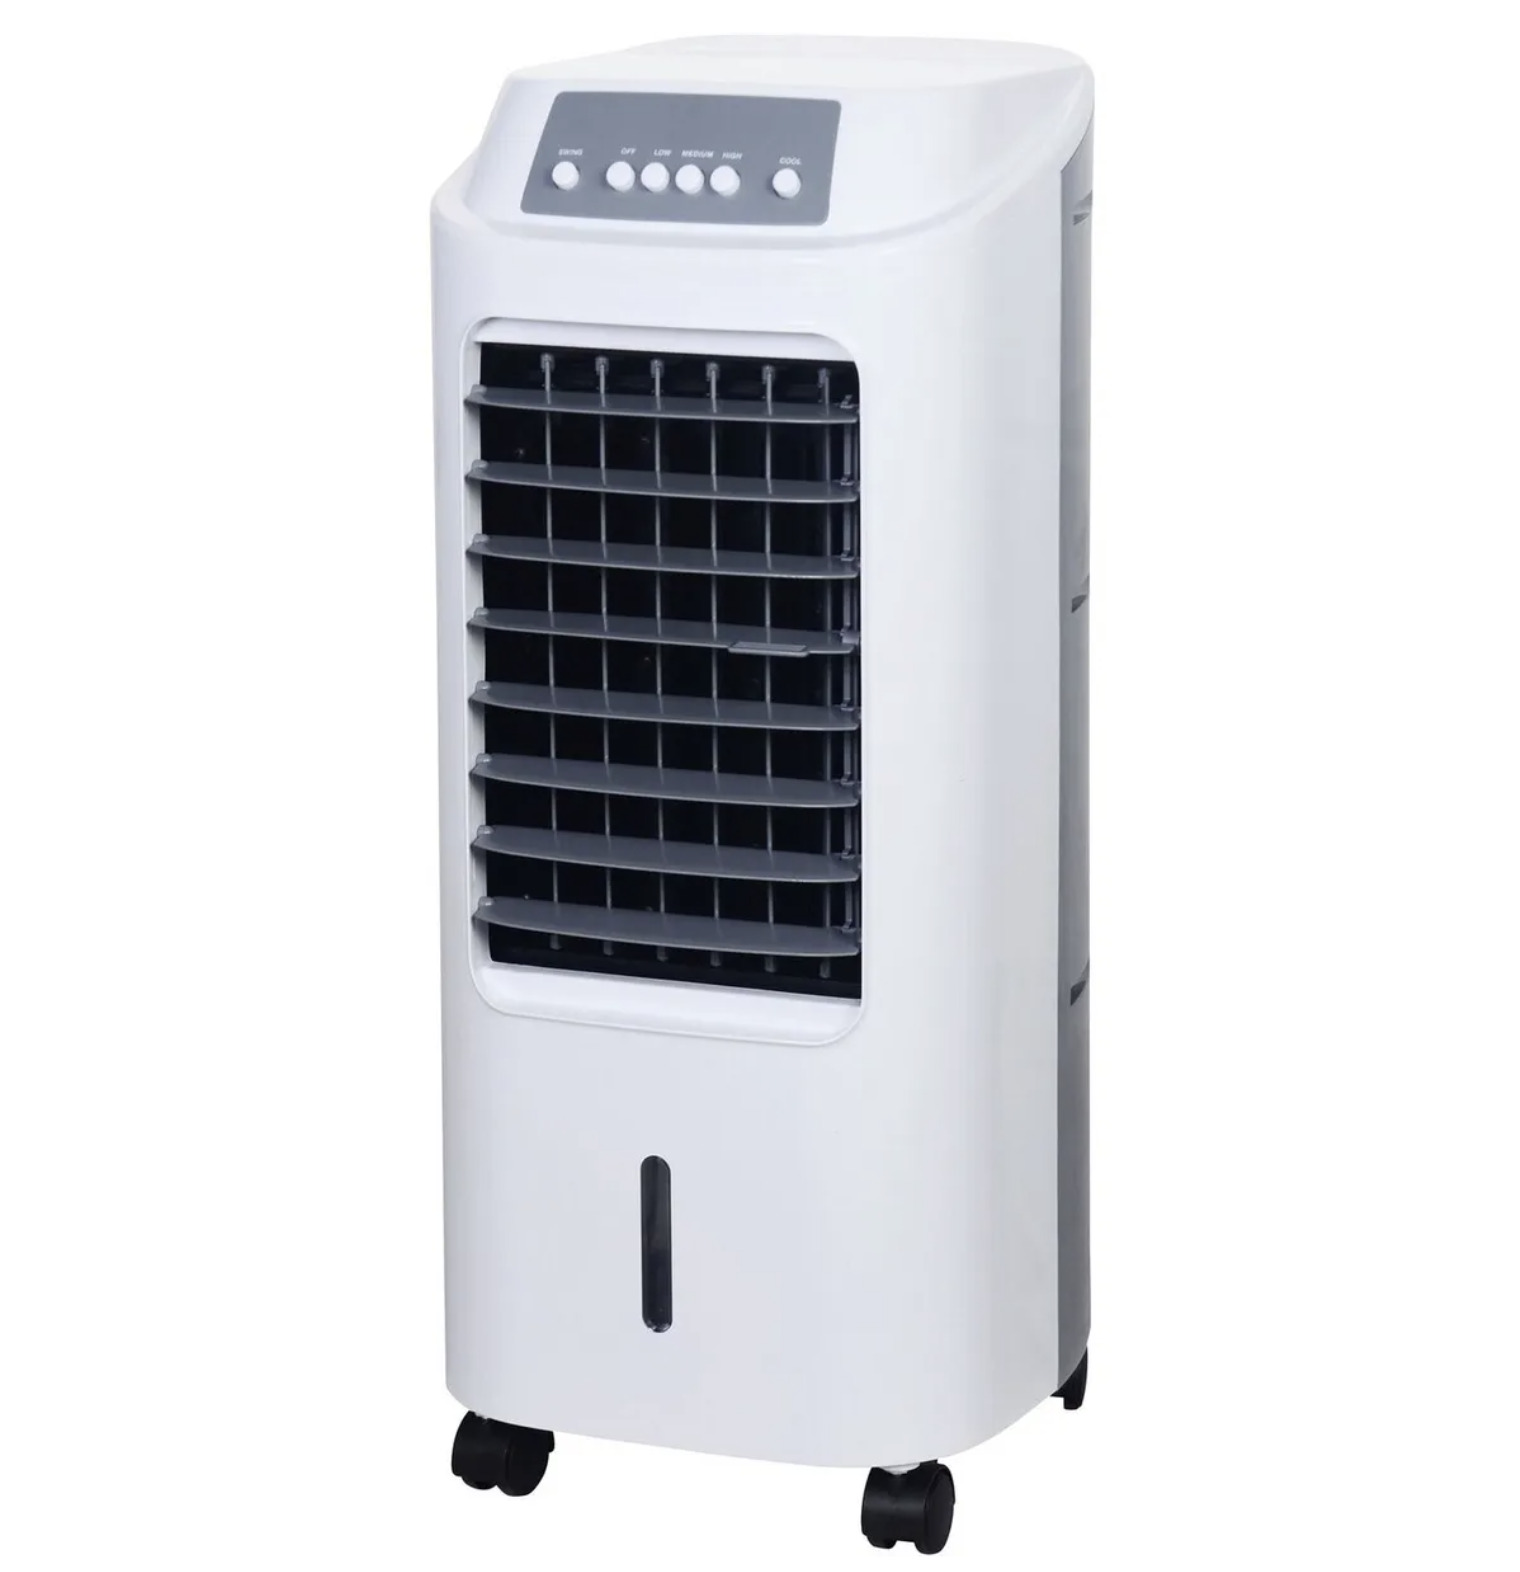 Охладитель воздуха для комнаты. Охладитель воздуха Obi LK 65-73. Охладитель воздуха CMI lk65-60. Охладитель воздуха CMI lk65-60 65 Вт. Охладитель Obi 65w.